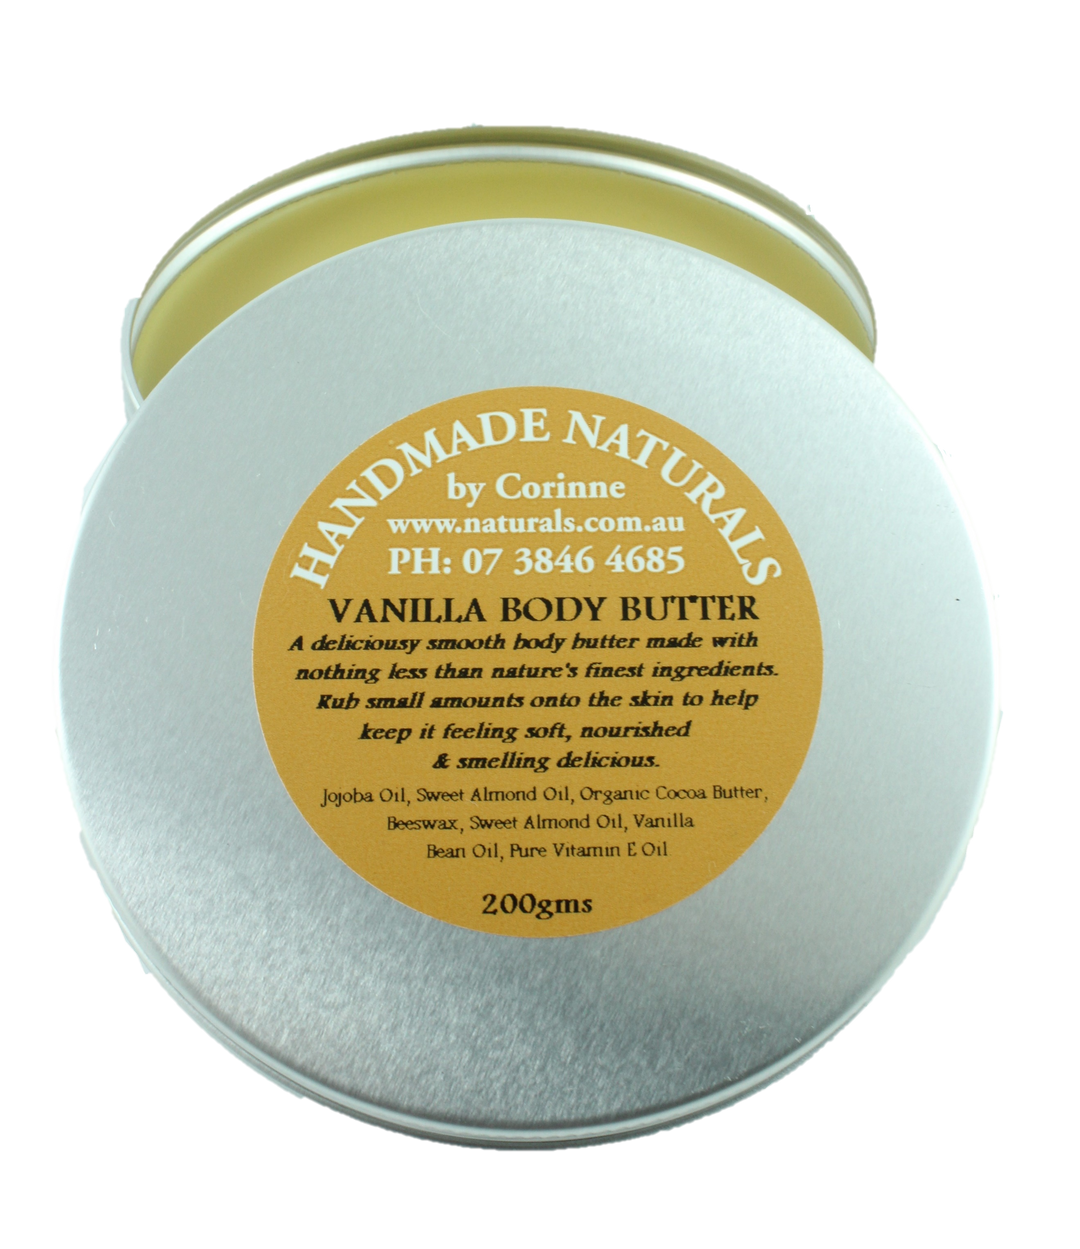 Body Butter VANILLA from Handmade Naturals